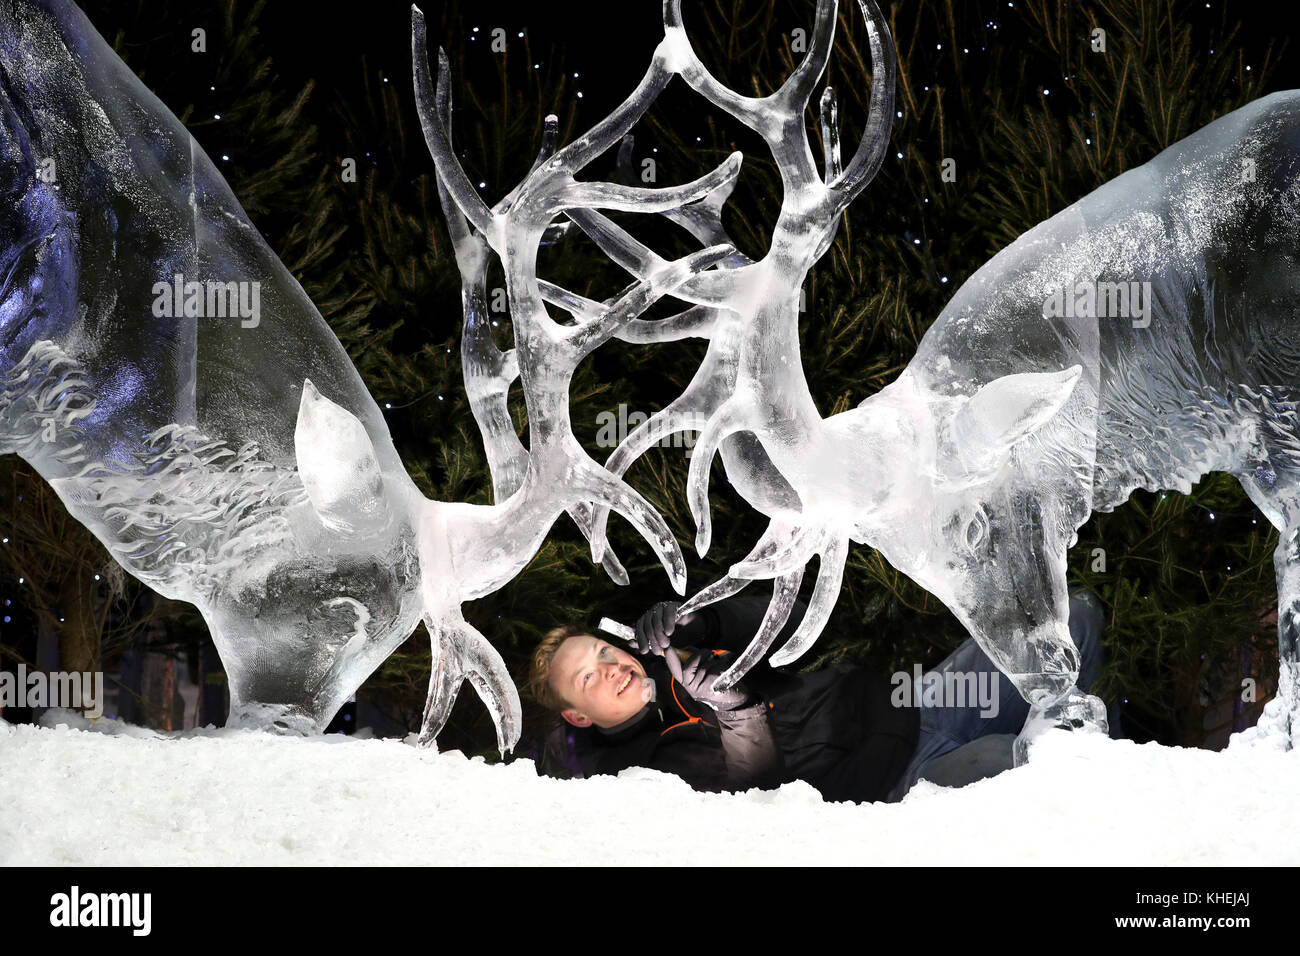 Maestro scultore di ghiaccio jack hackney mette i tocchi di rifinitura per una scultura di ghiaccio di due cervi, che fa parte della prossima mostra il ghiaccio avventura: un viaggio attraverso la Scozia congelati in George Street, Edimburgo. Foto Stock